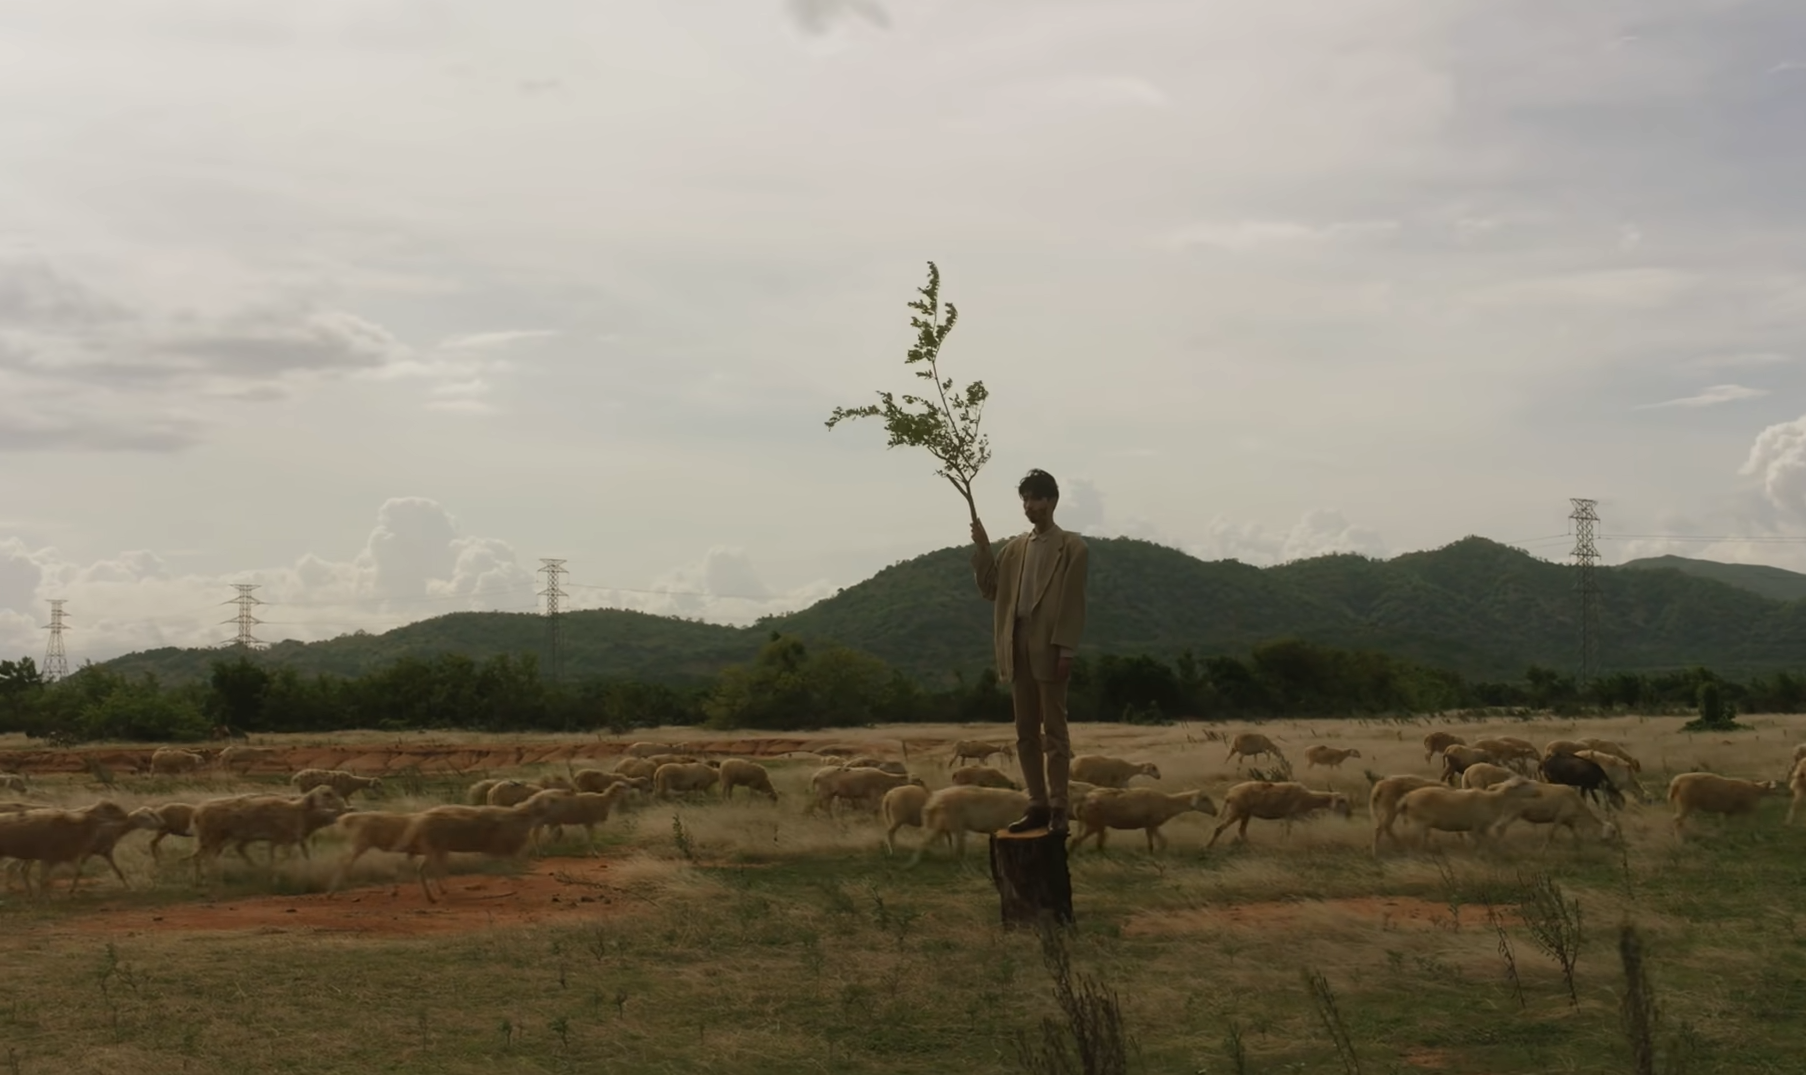 Khám phá đồng cỏ đẹp như thảo nguyên trong MV "Trốn tìm" của Đen Vâu - 2